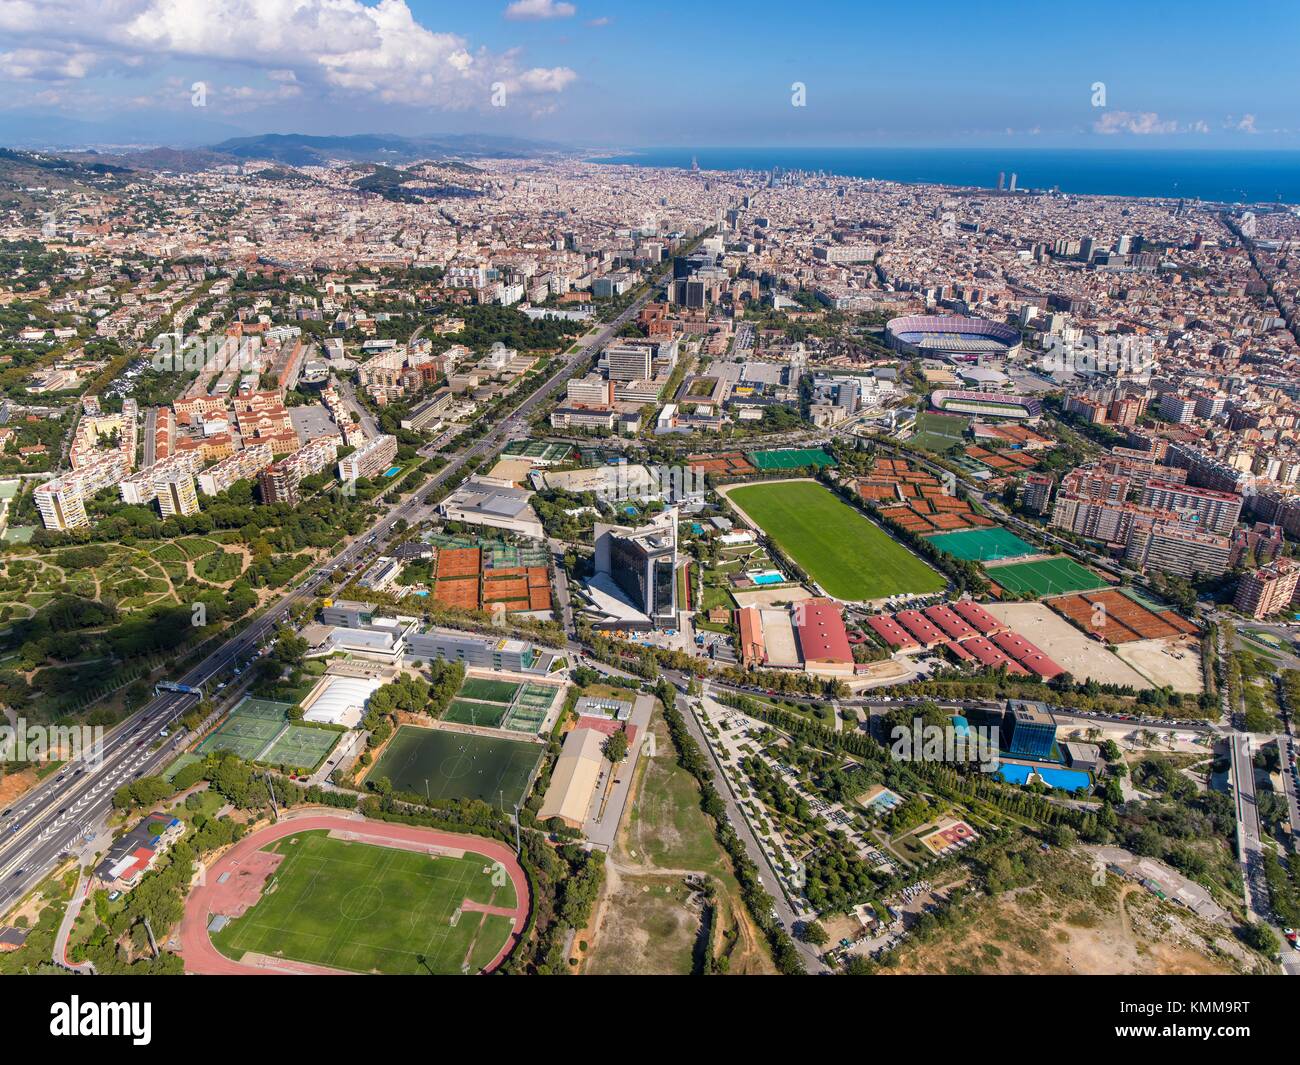 Las instalaciones deportivas del Fútbol Club Barcelona. El Camp Nou. Foto de stock